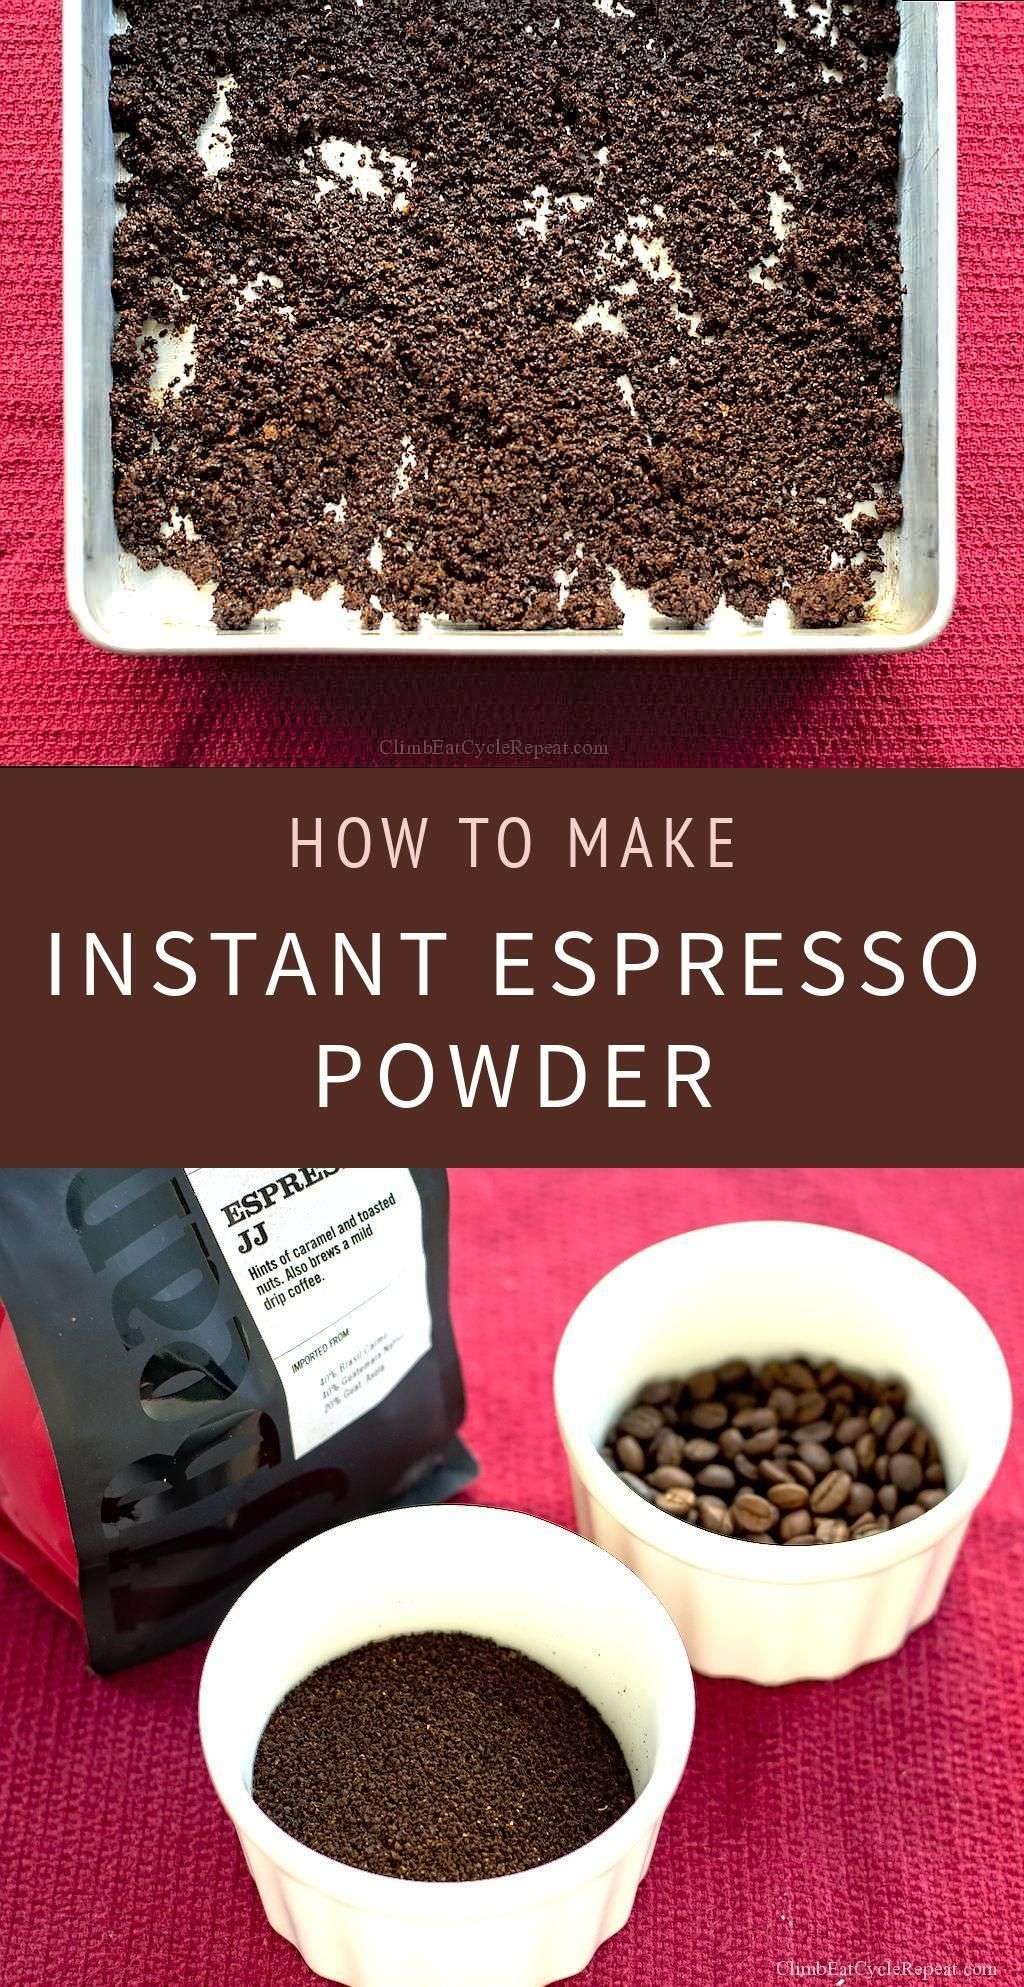 How to Make: Instant Espresso Powder